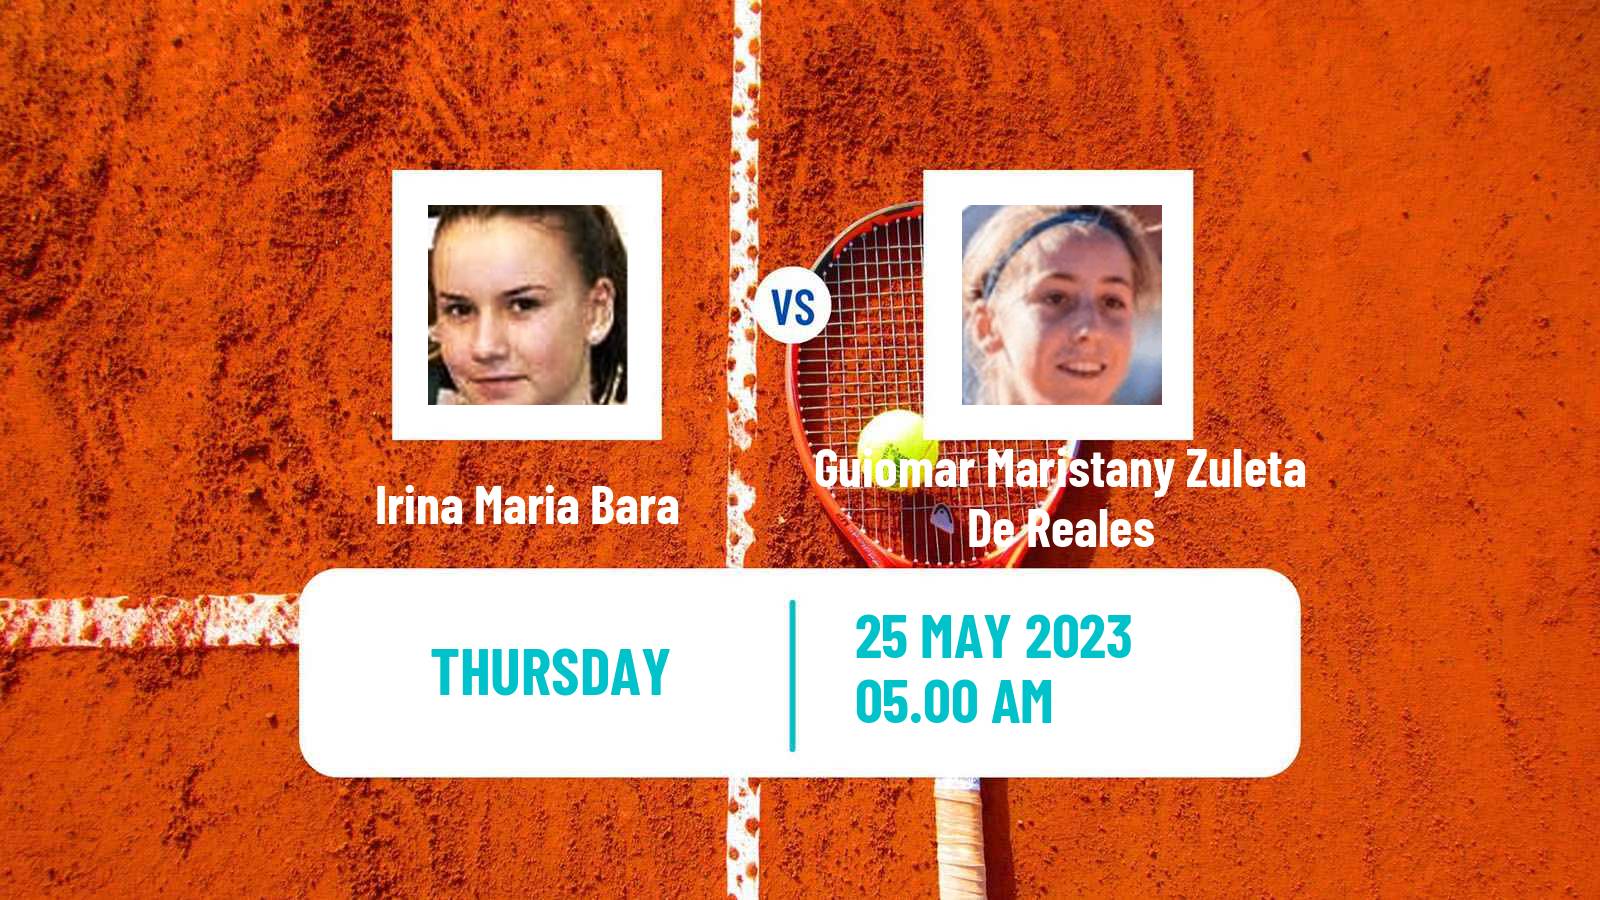 Tennis ITF W40 Otocec Women Irina Maria Bara - Guiomar Maristany Zuleta De Reales